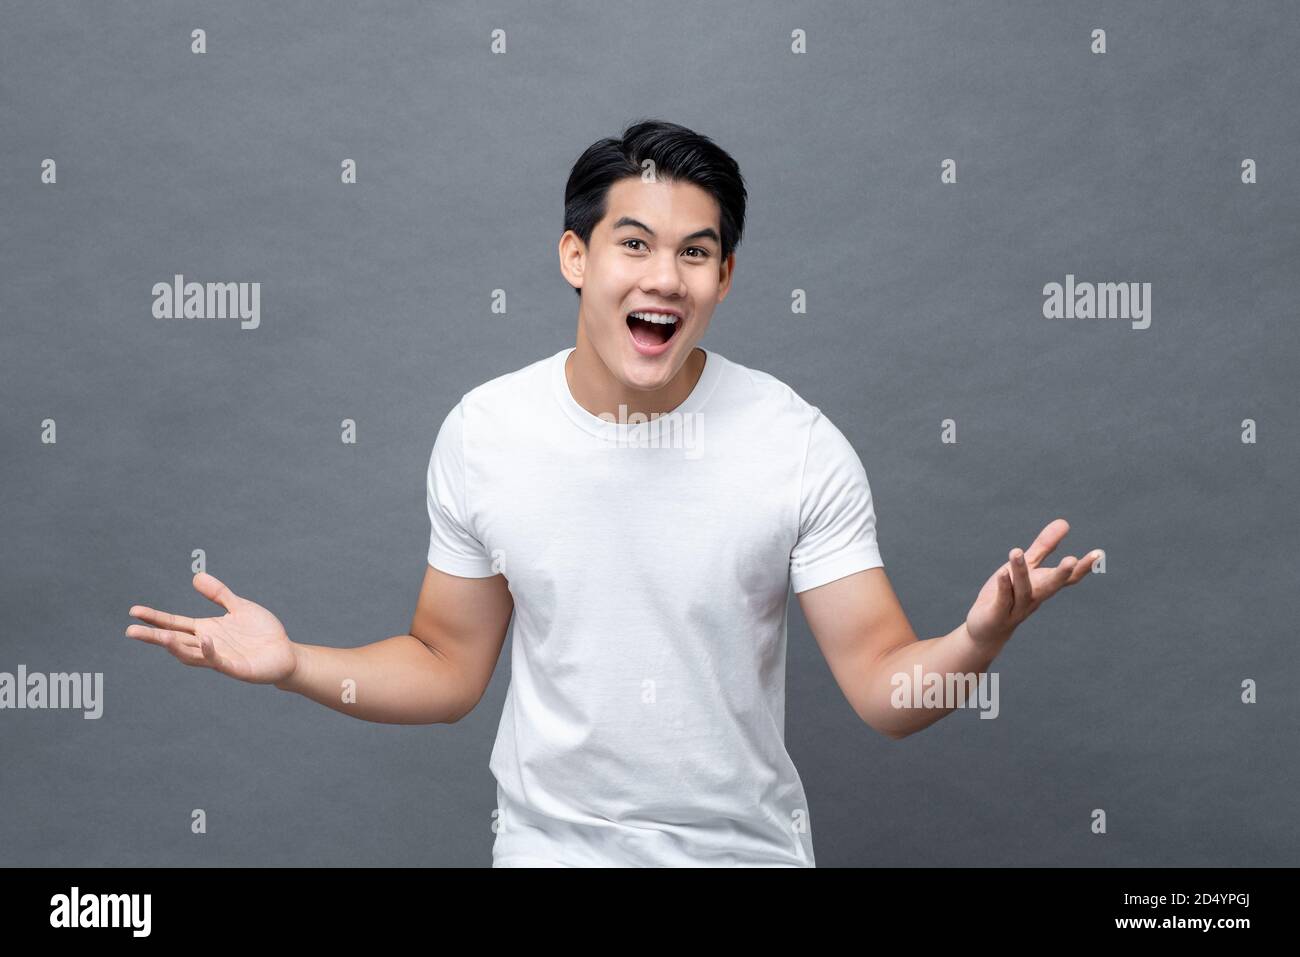 Eccitato sorpreso bello giovane asiatico in gesto a mano aperta isolato su sfondo grigio chiaro Foto Stock